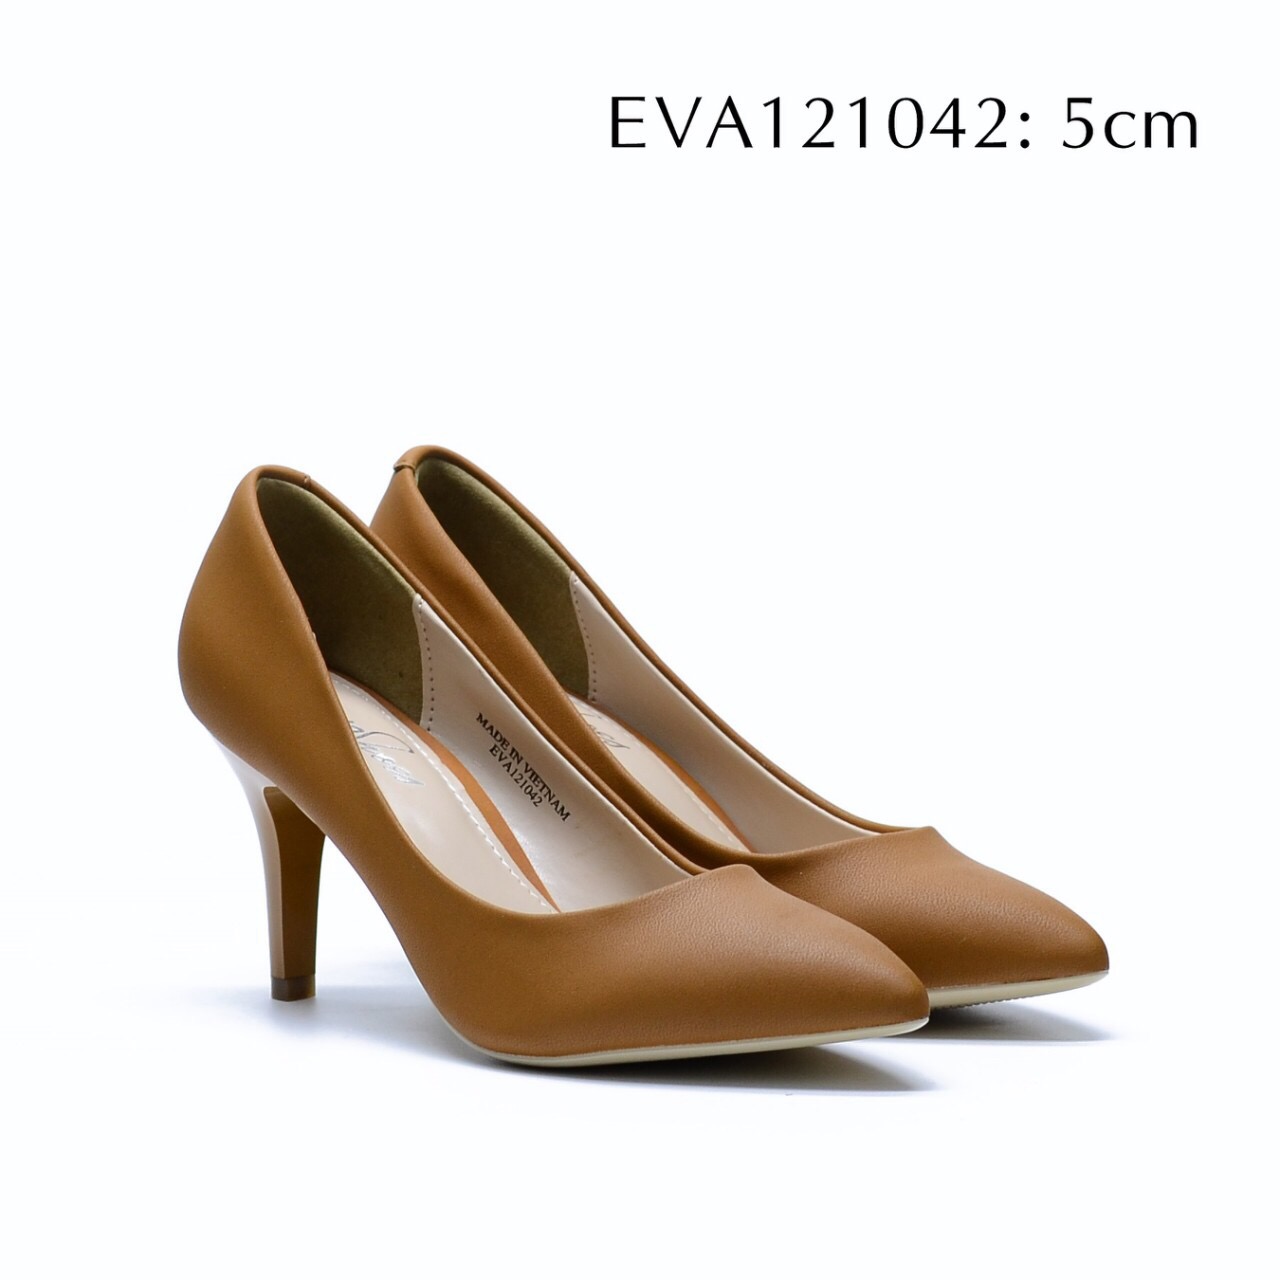 Giày công sở trẻ trung EVA121042 thiết kế đơn giản tạo nét đẹp duyên dáng